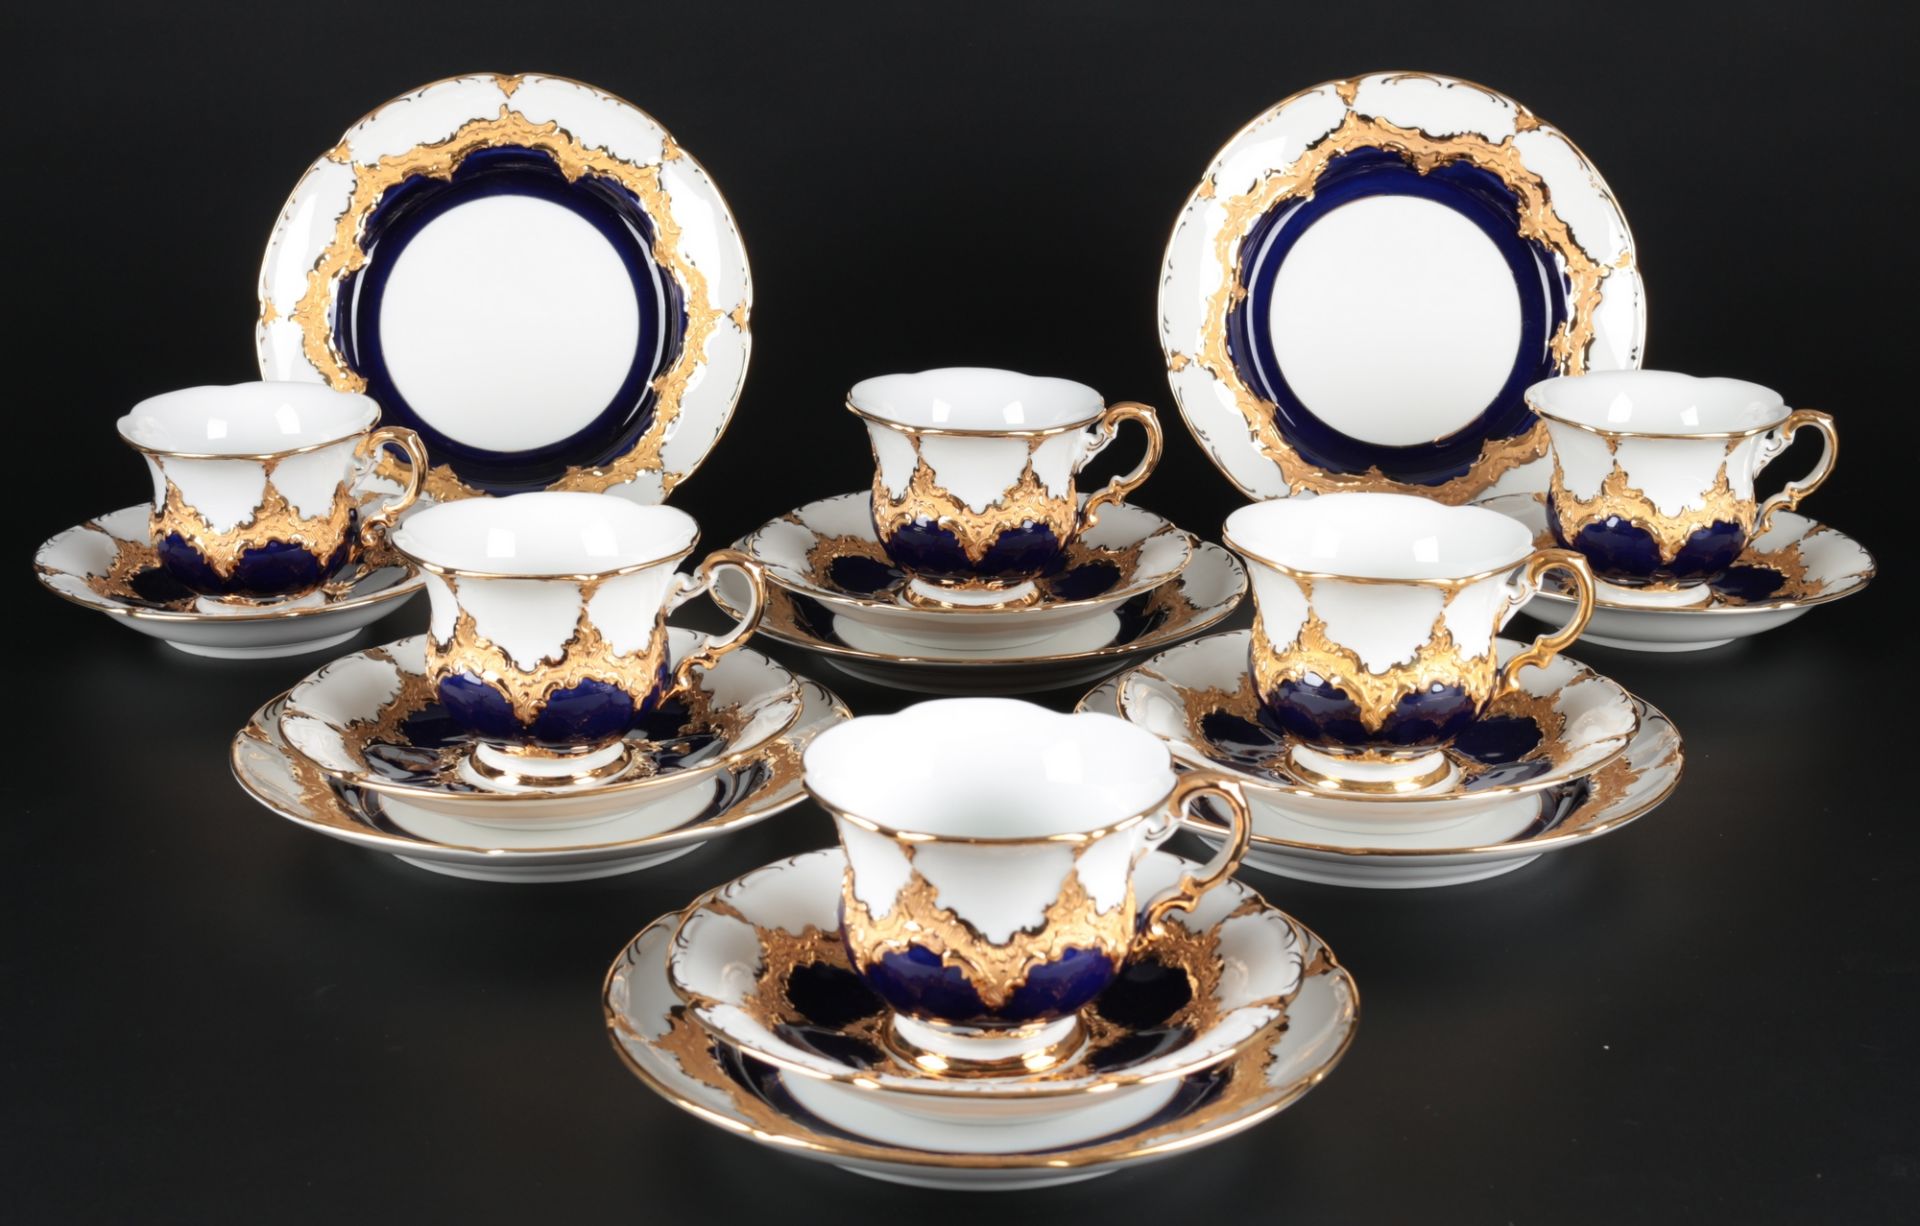 Meissen B-Form kobaltblau 6 Kaffeegedecke, 6 coffee cups with plates